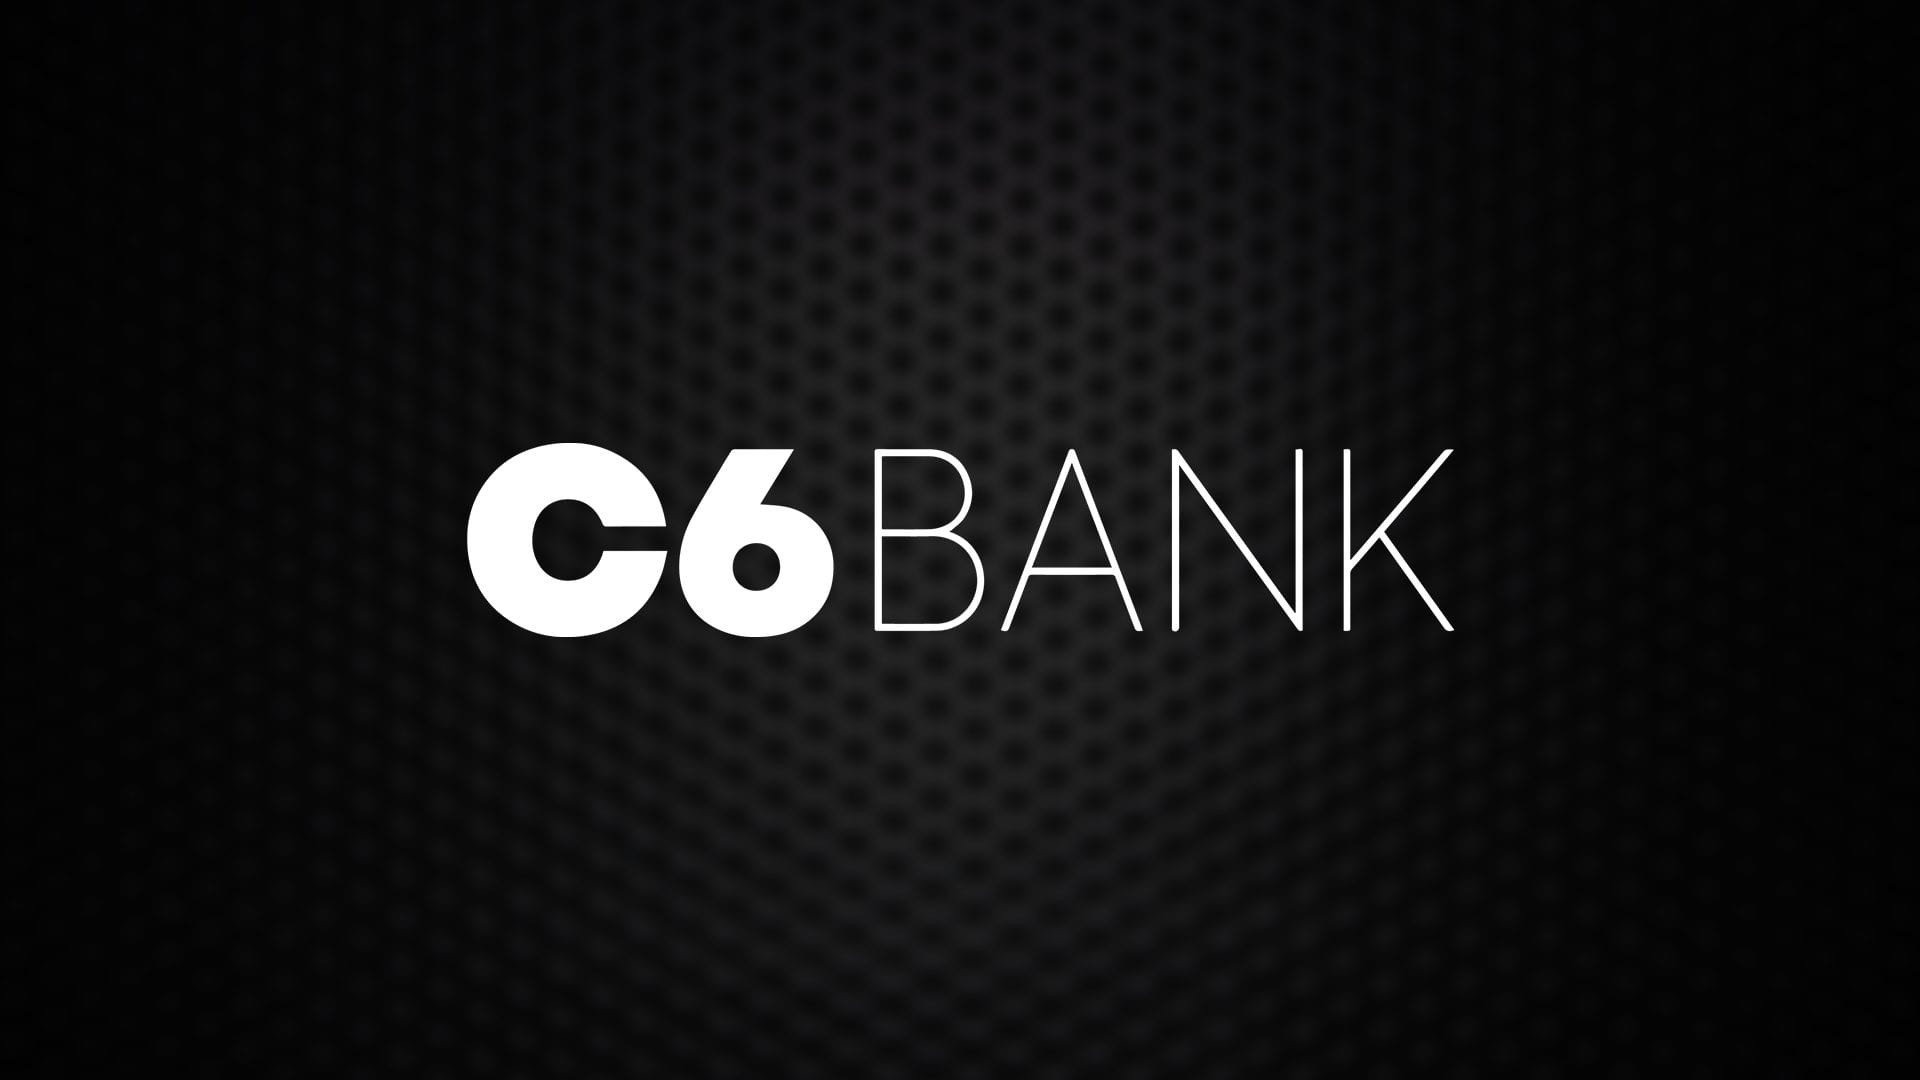 C6 Bank Lança Investimento Muito Aguardado por Usuários: Uma